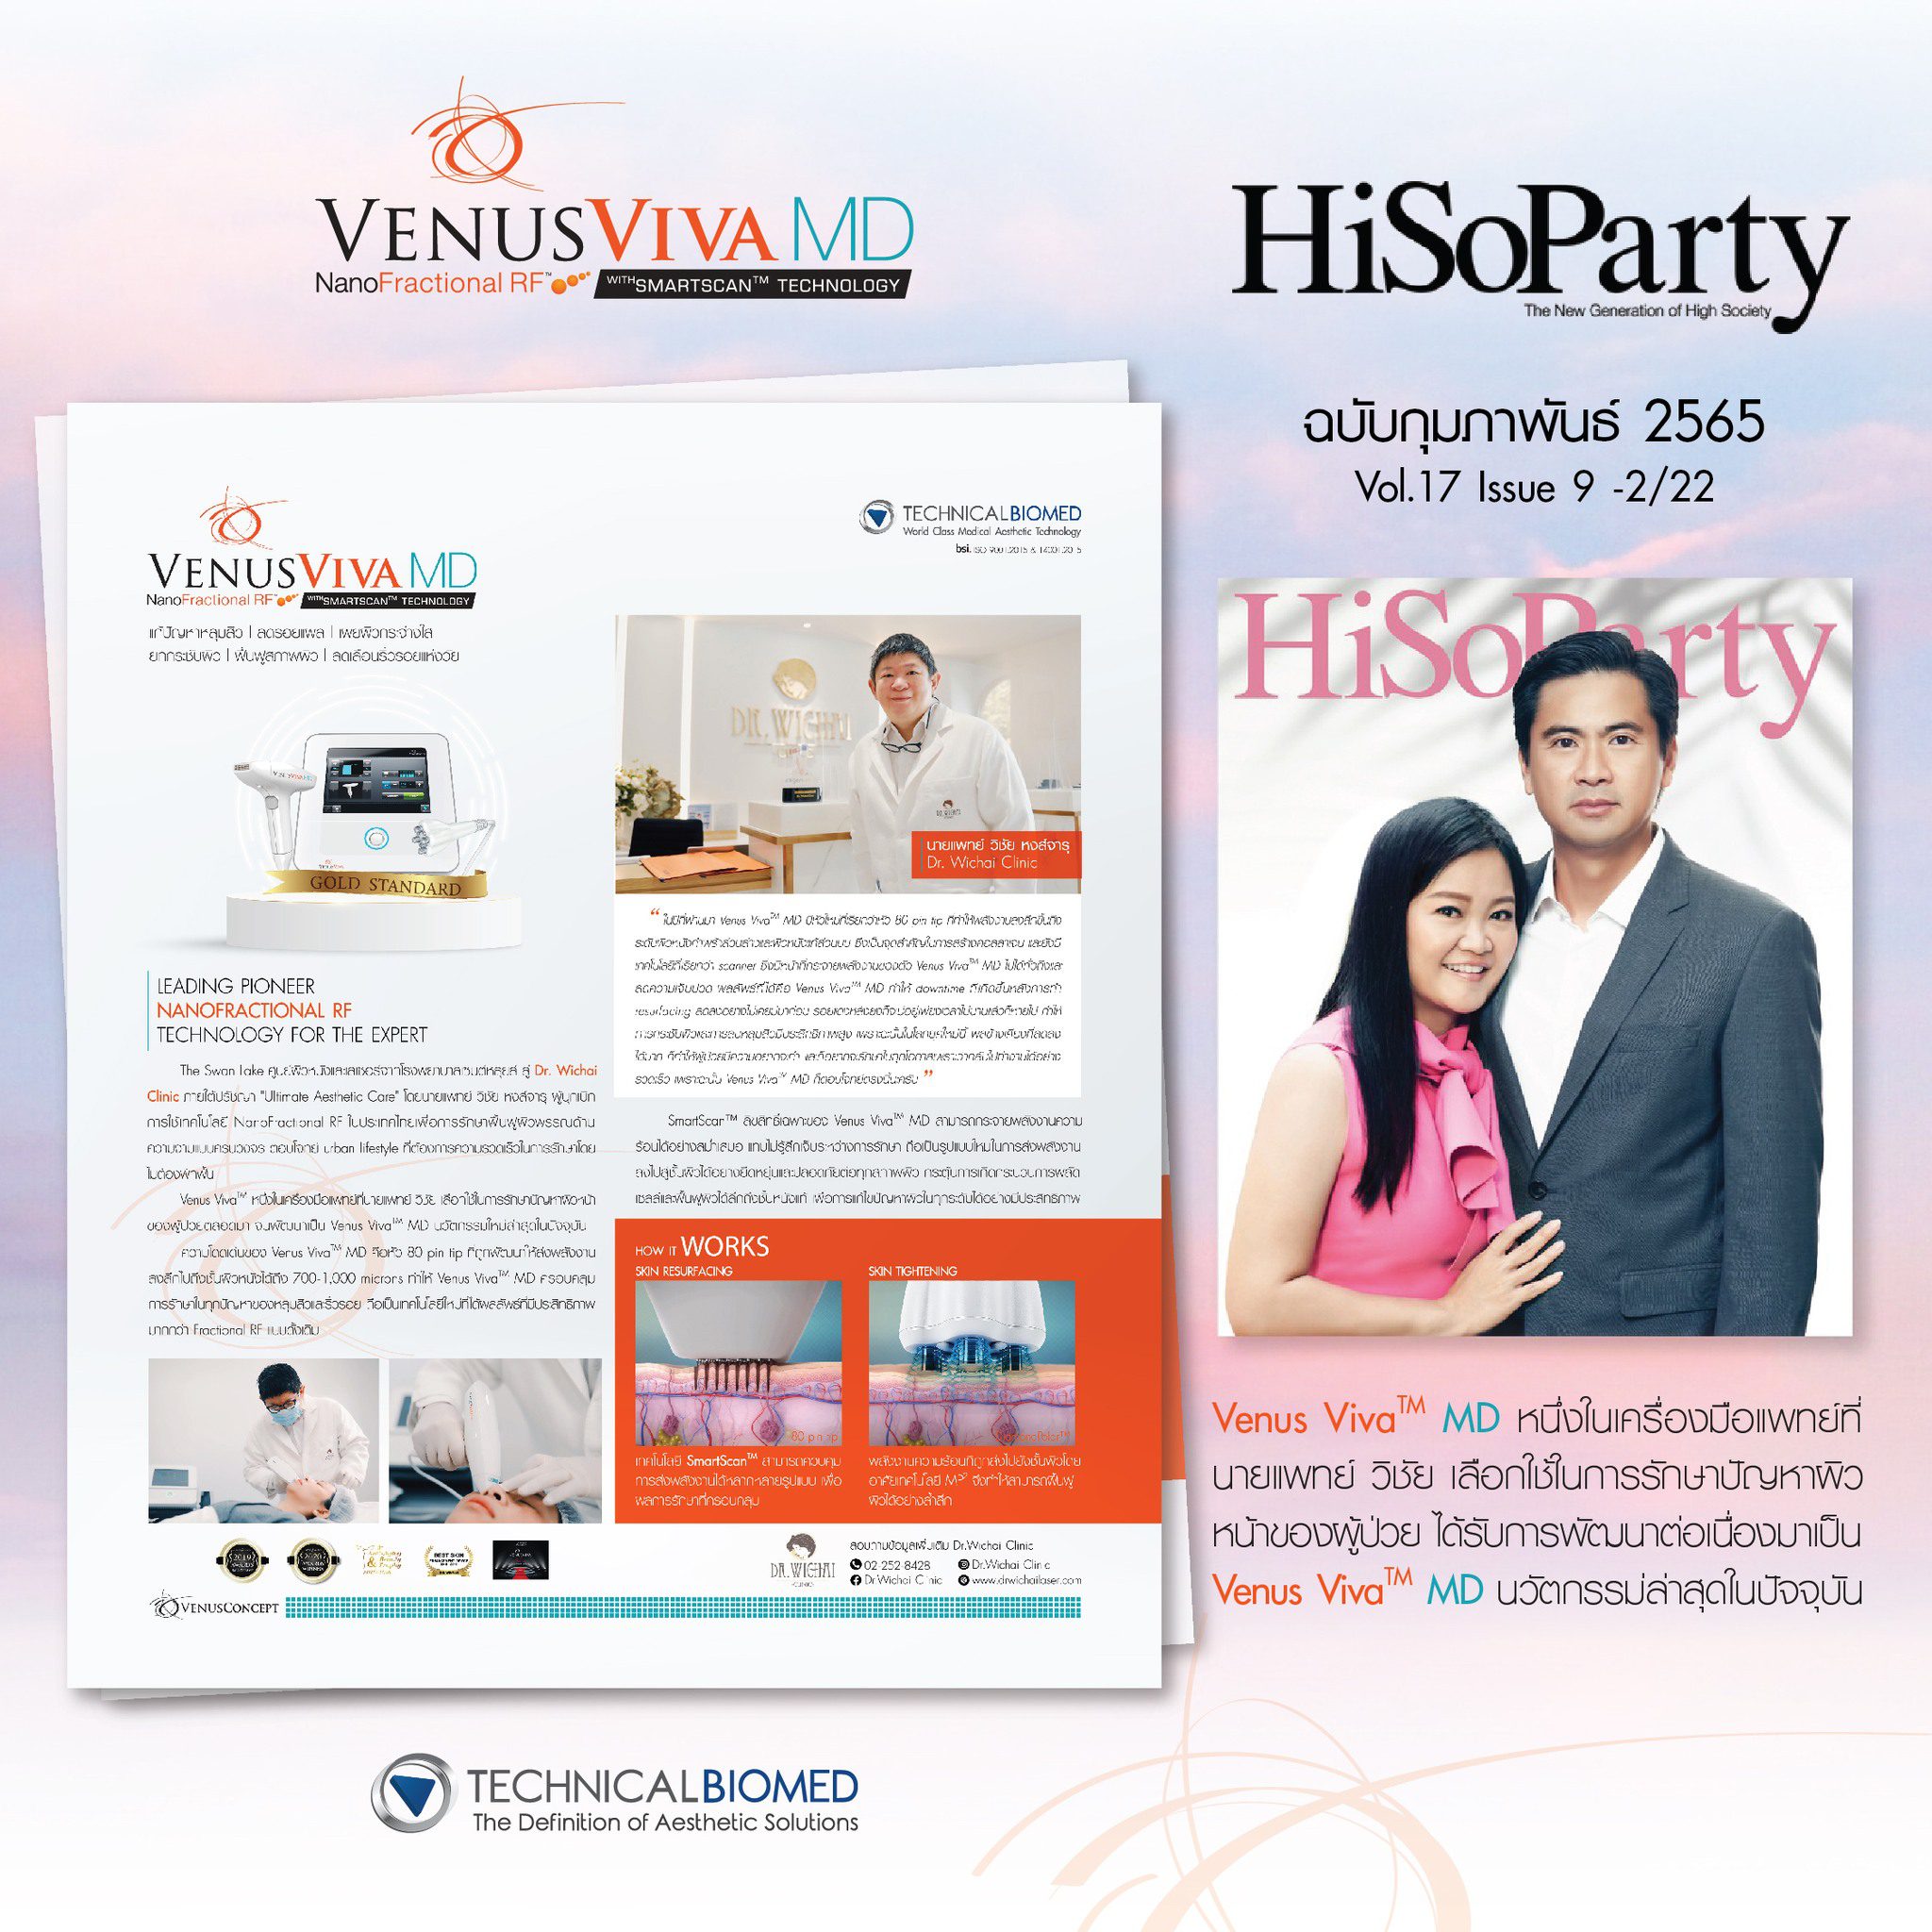 ขอขอบคุณนิตยสาร HiSoParty